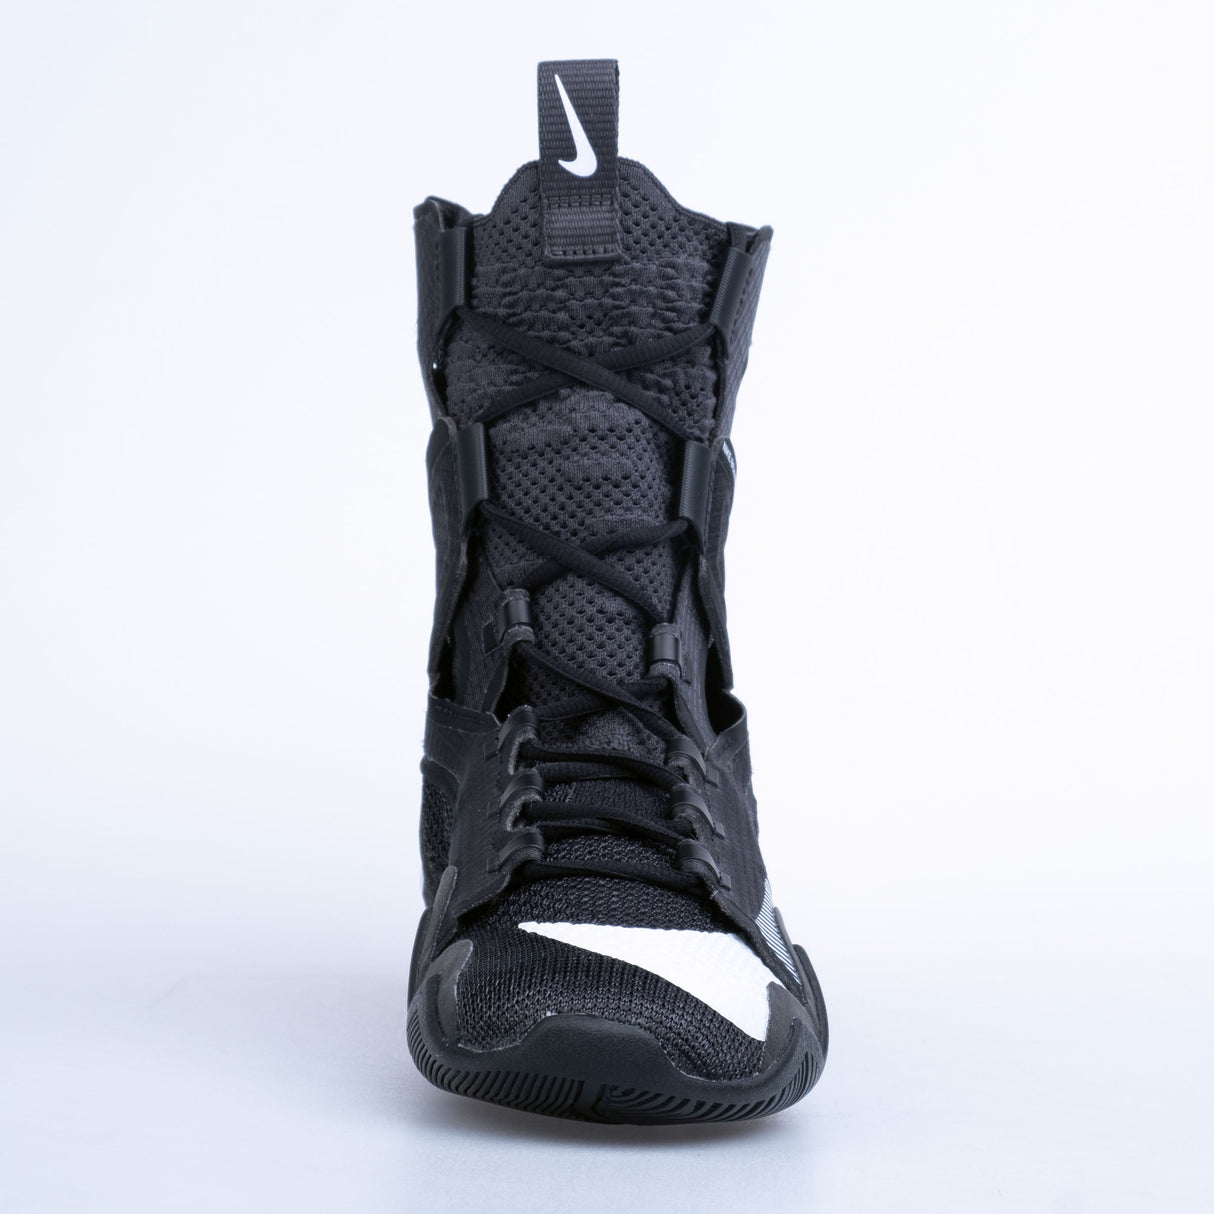 Nike Boxschuhe HyperKO 2 - schwarz/weiß/grau, CI2953002